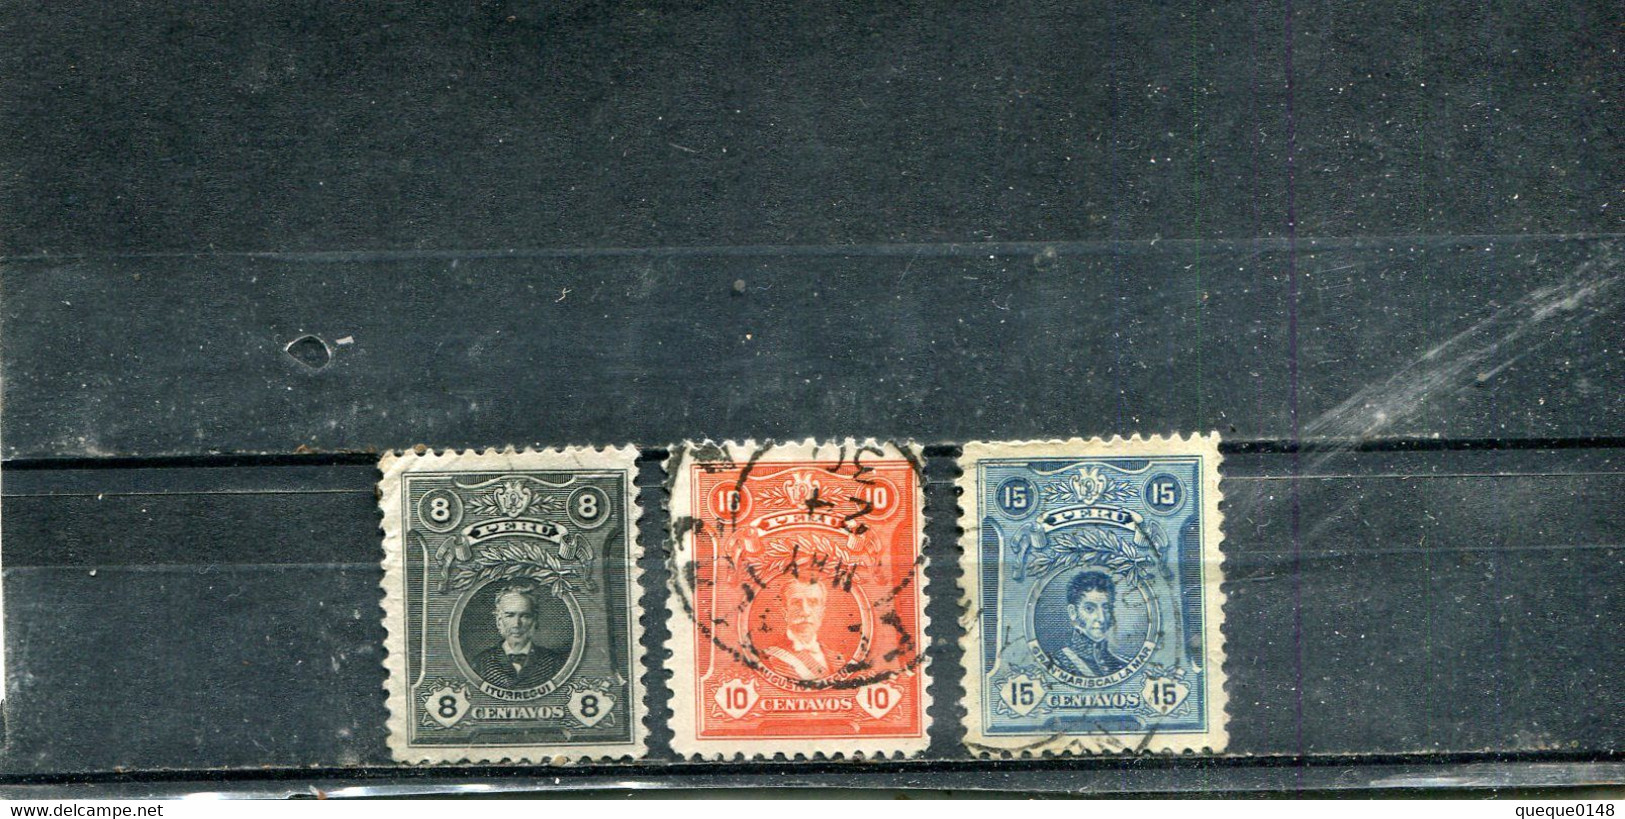 Pérou 1925-26 Yt 211-213 Série Courante - Perù